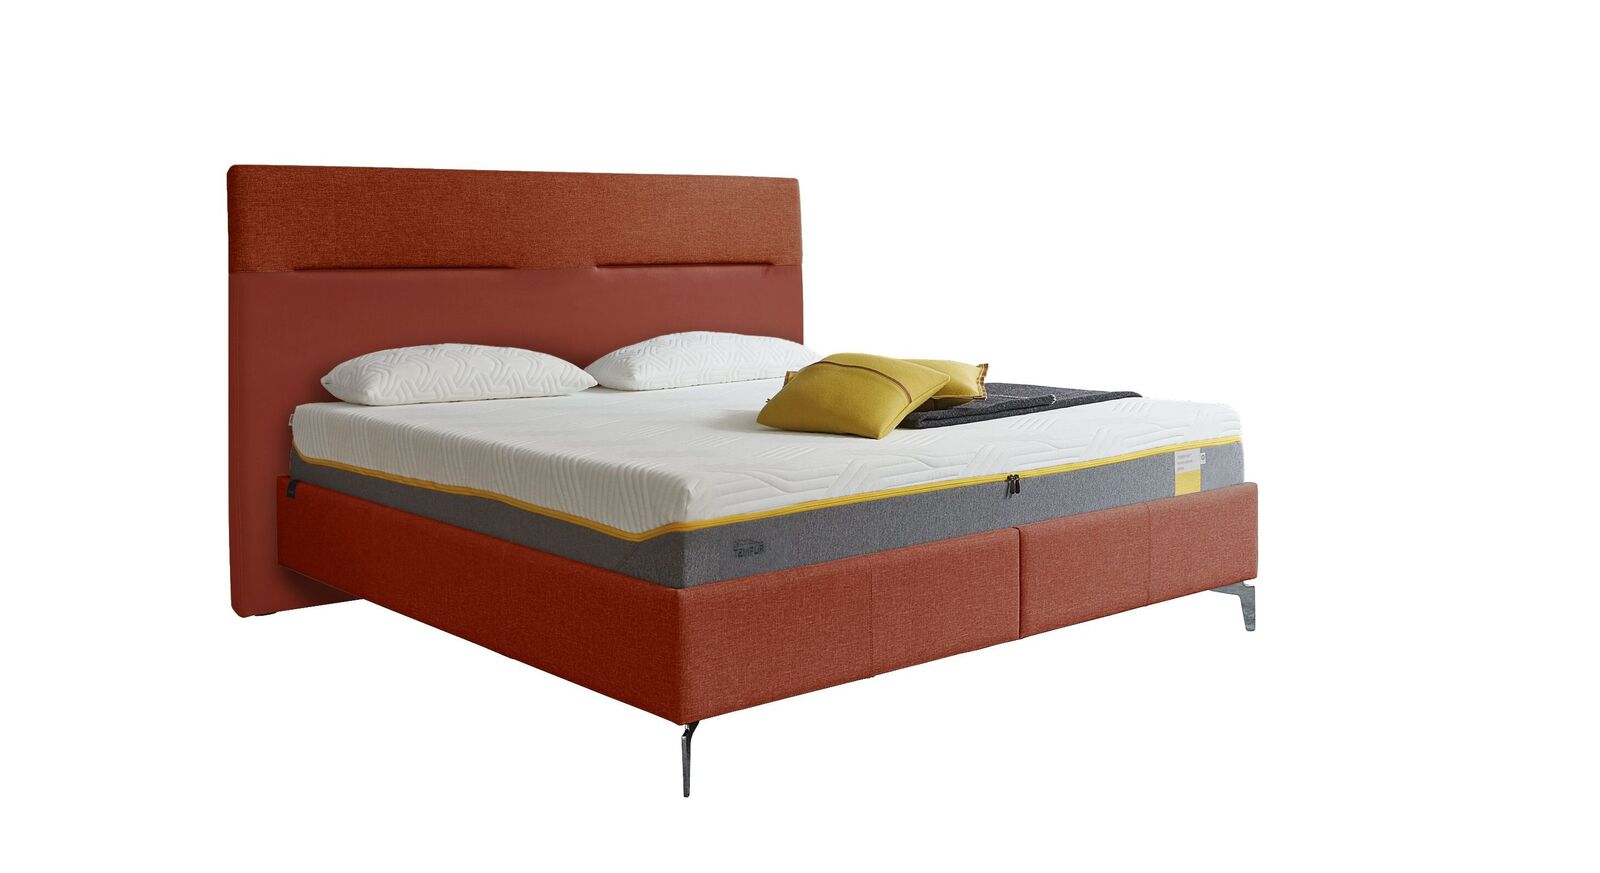 TEMPUR Bett Relax Texture mit Bezug in Webstoff und Kunstleder in Orange